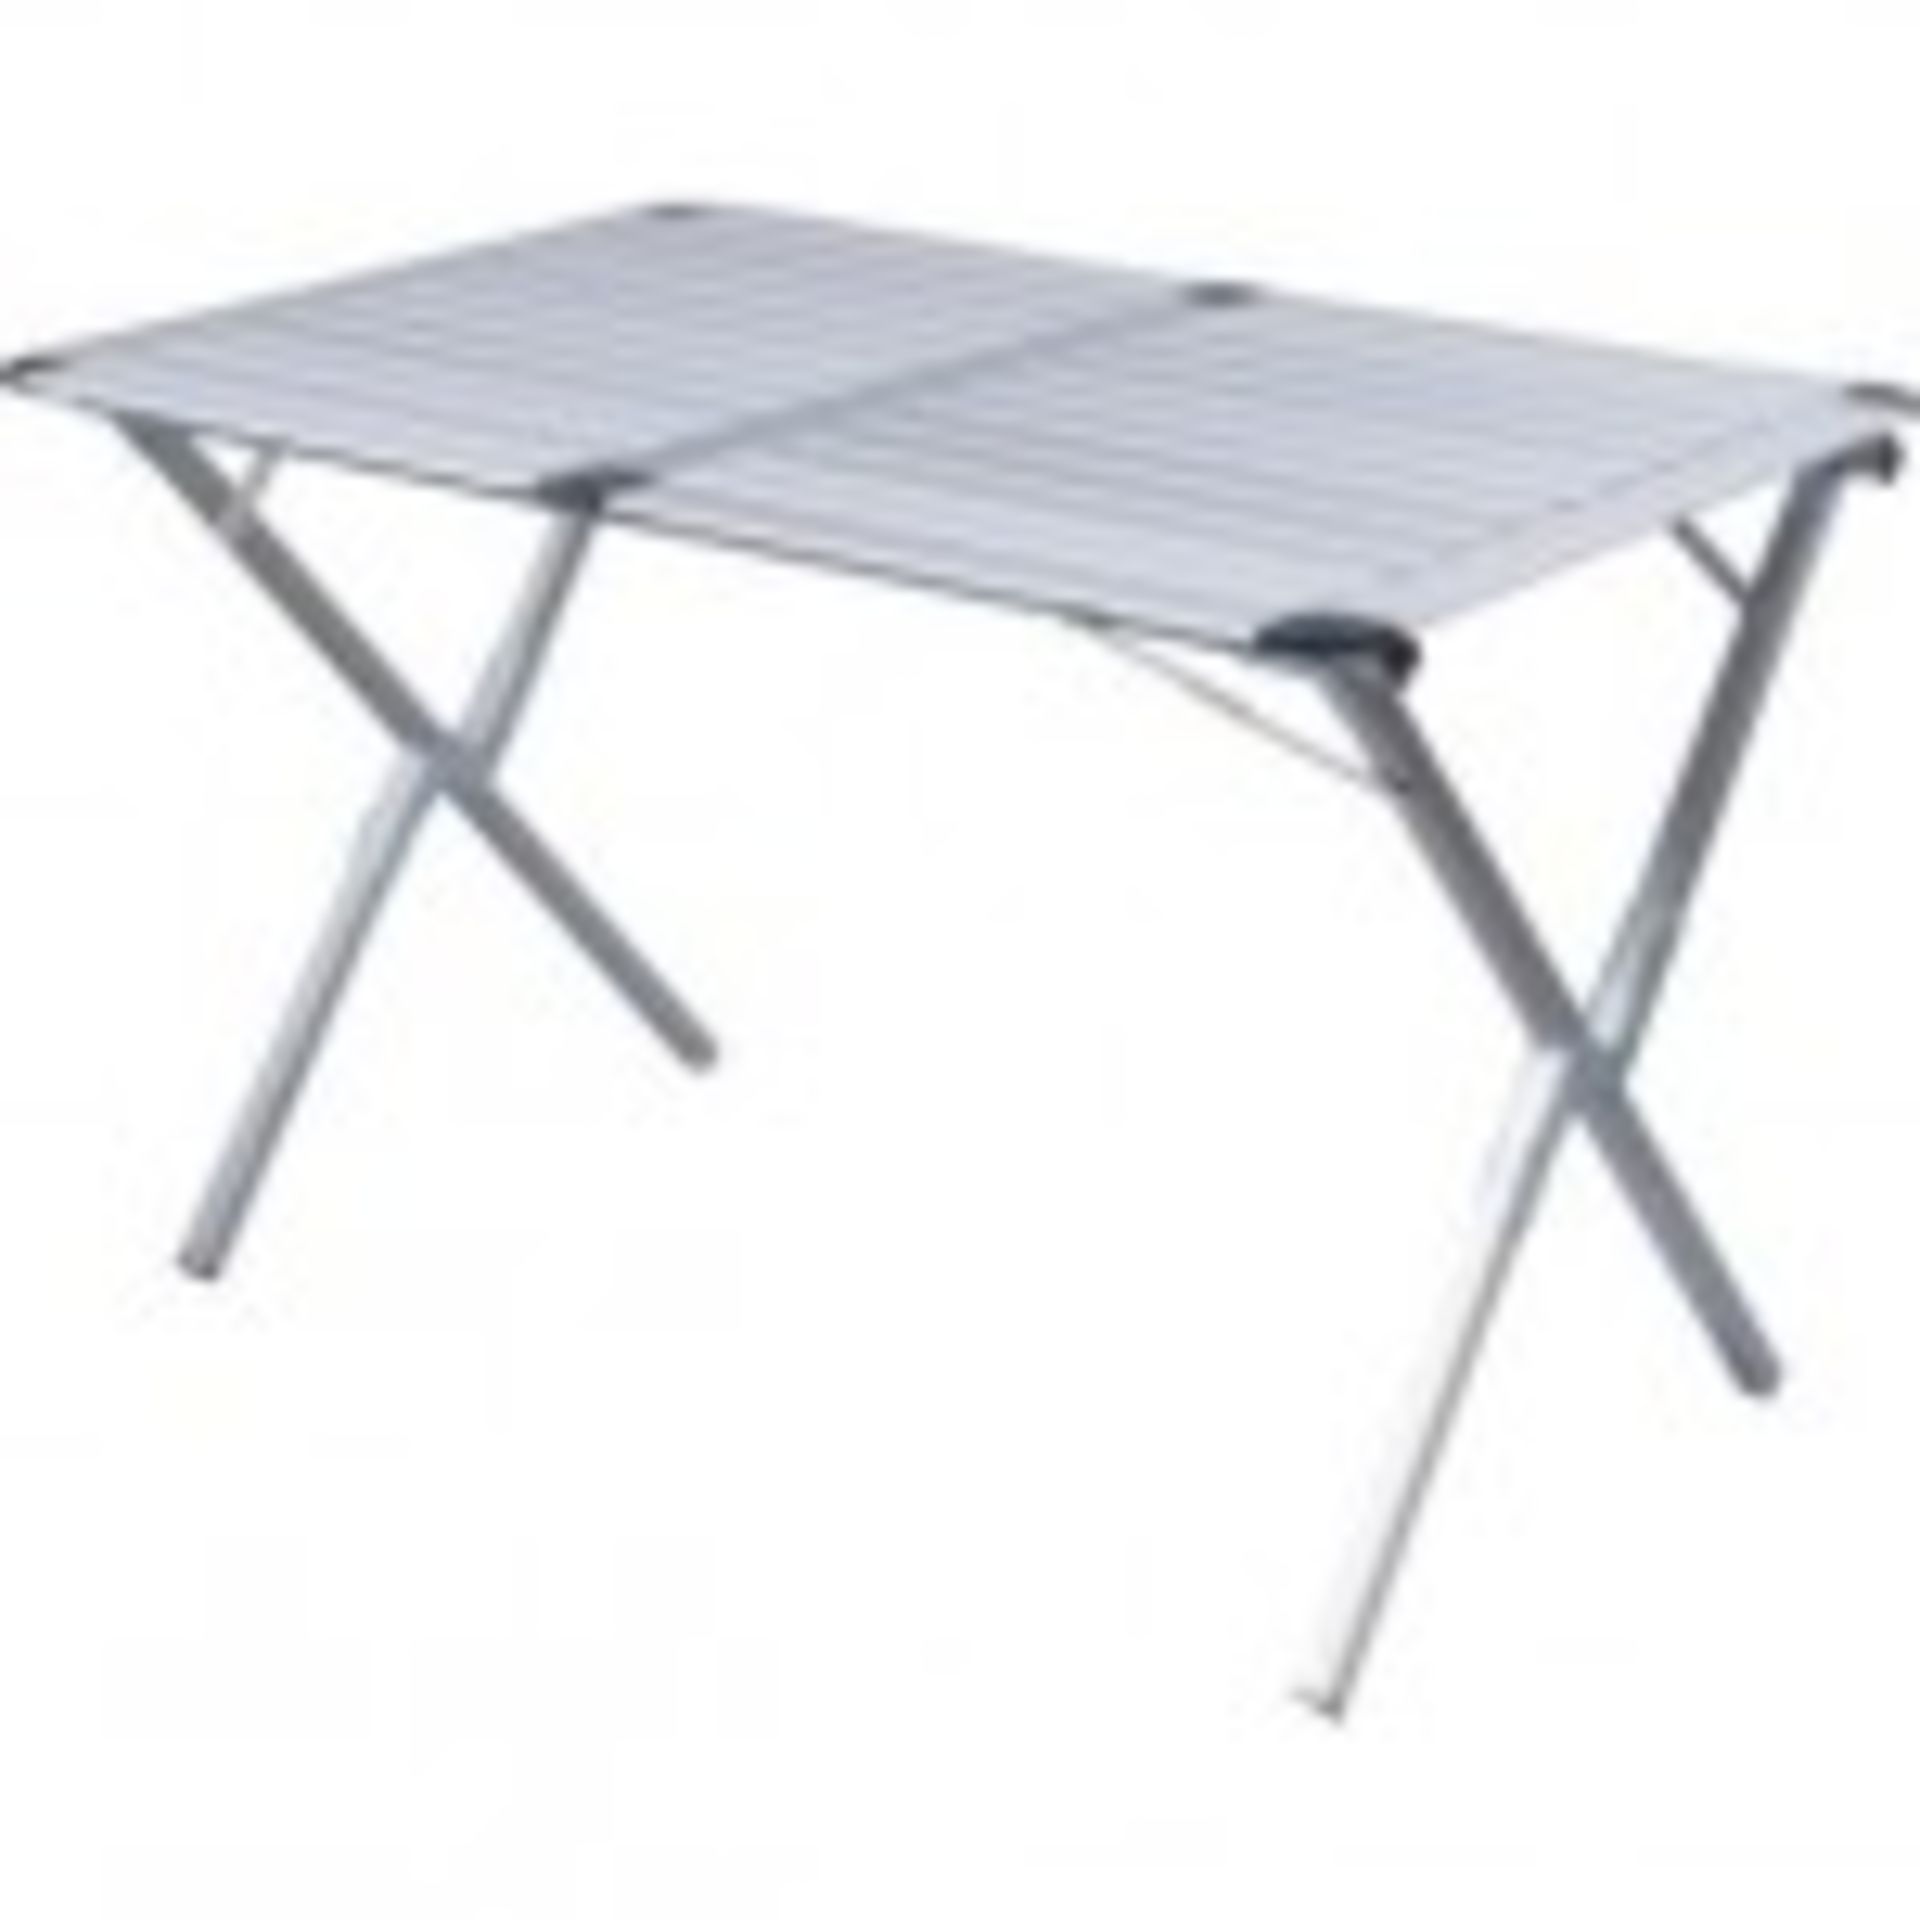 Grade U Aluminium Slatted Folding Table